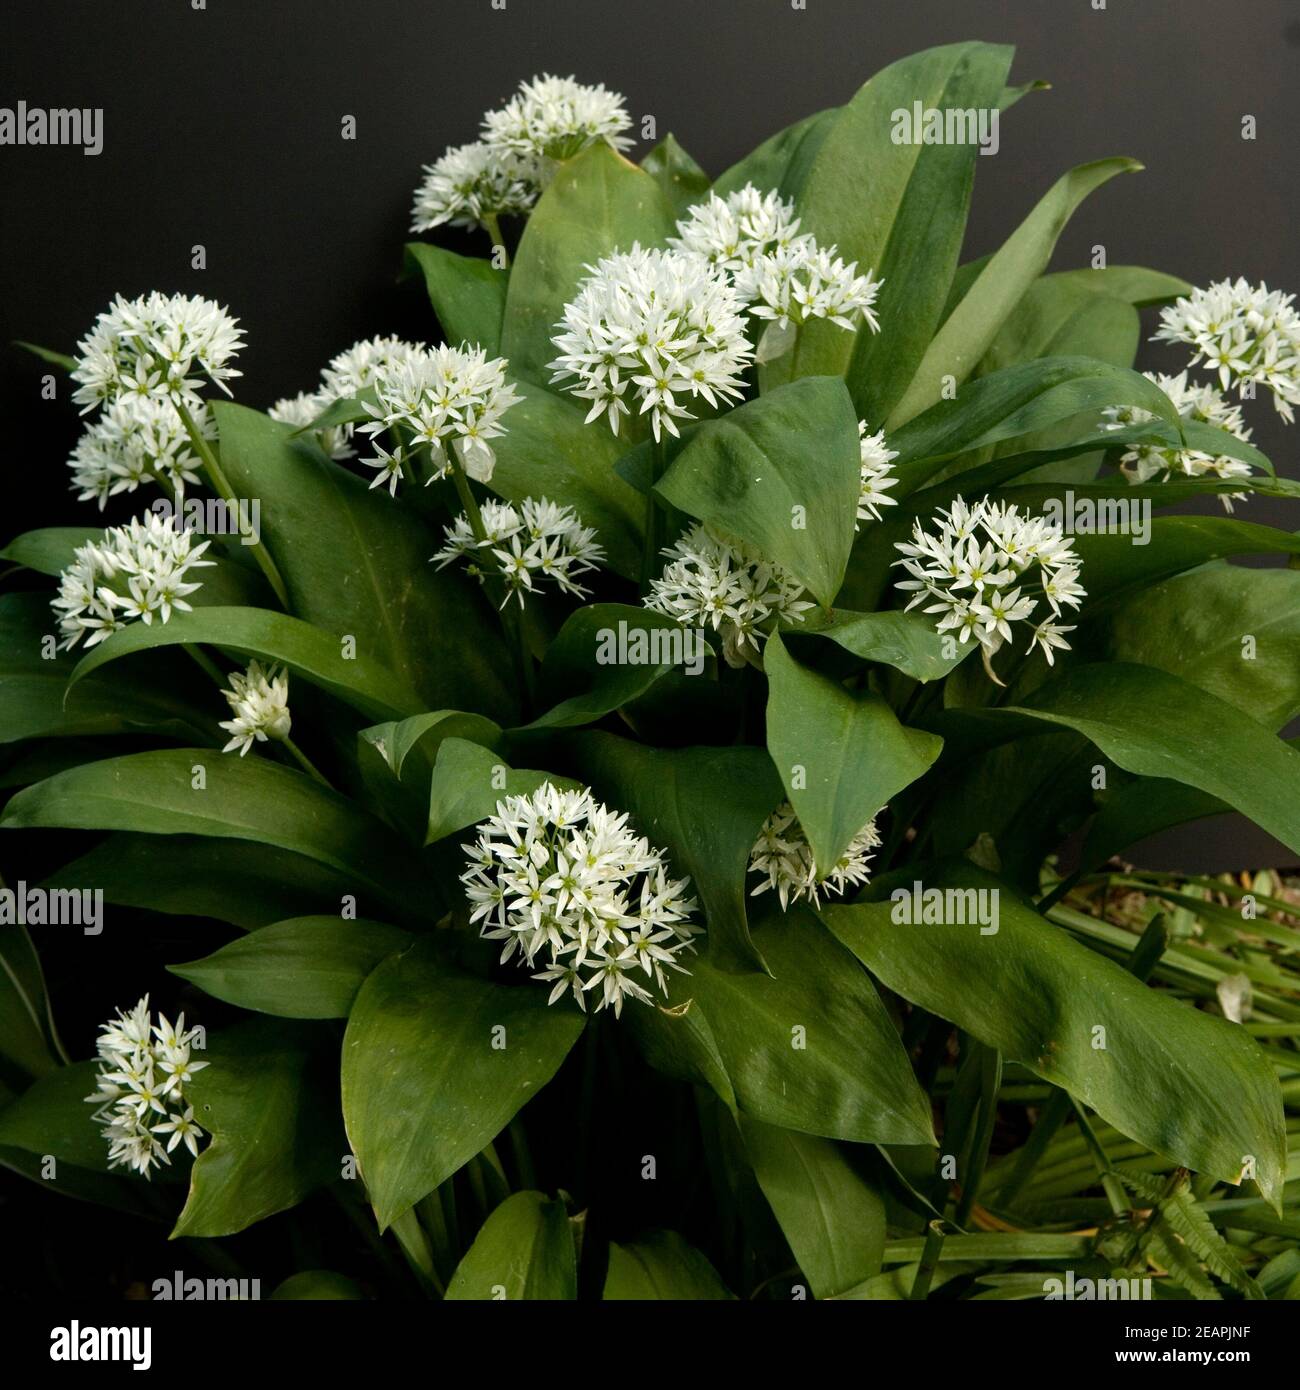 Baerlauch, Allium, ursinum, Zwiebelpflanze, Wildkraeuter, Wildgemuese, Stock Photo